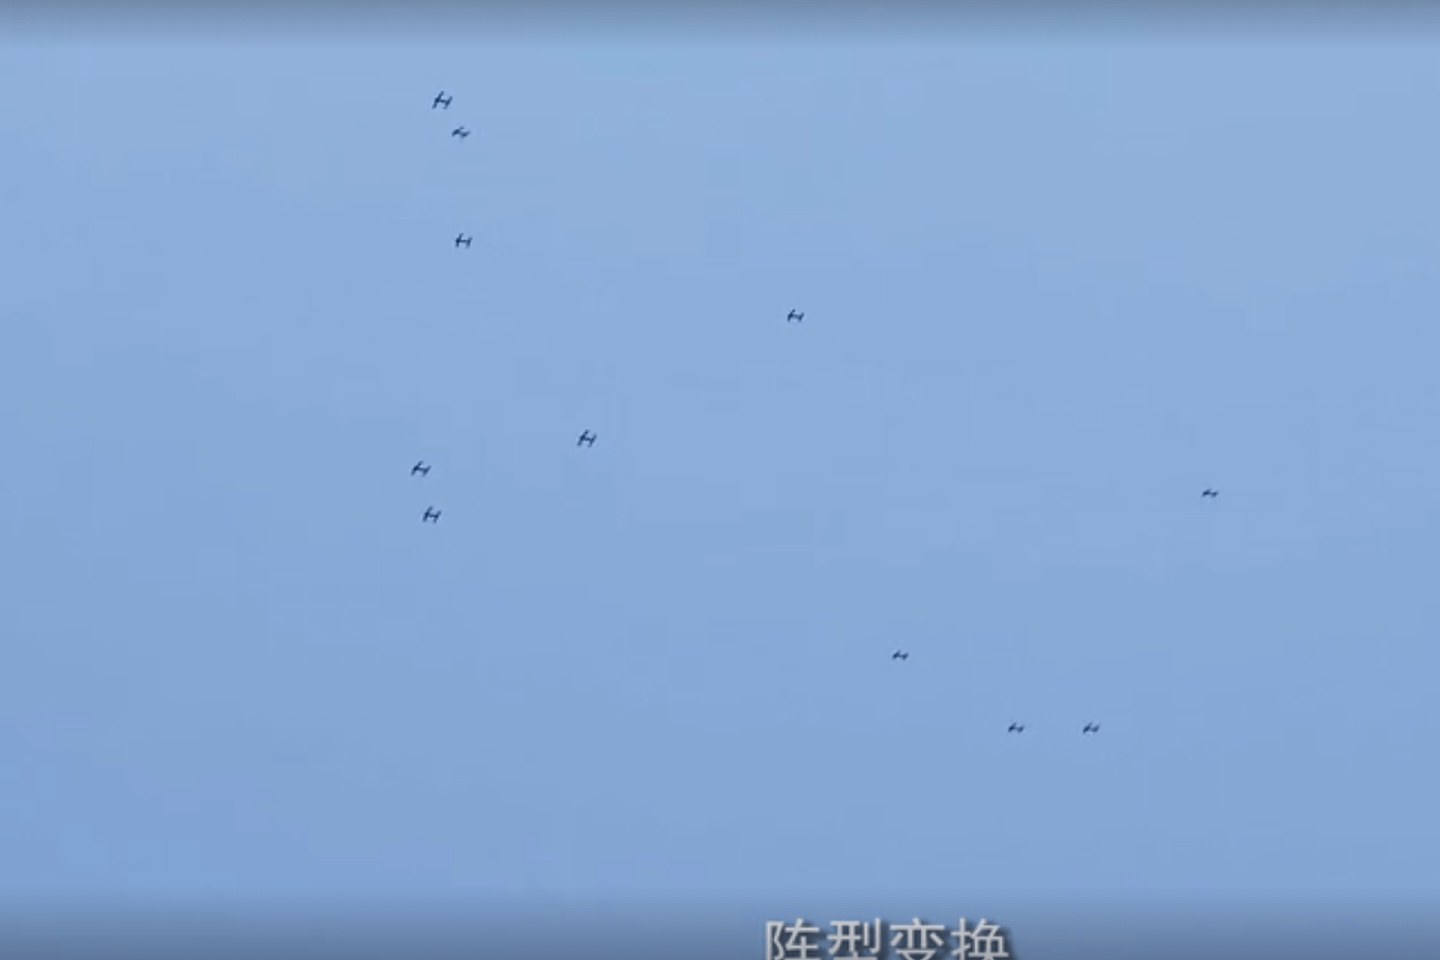 48管无人机“蜂群”空中编队待命。 （微博@鼎盛沙龙）